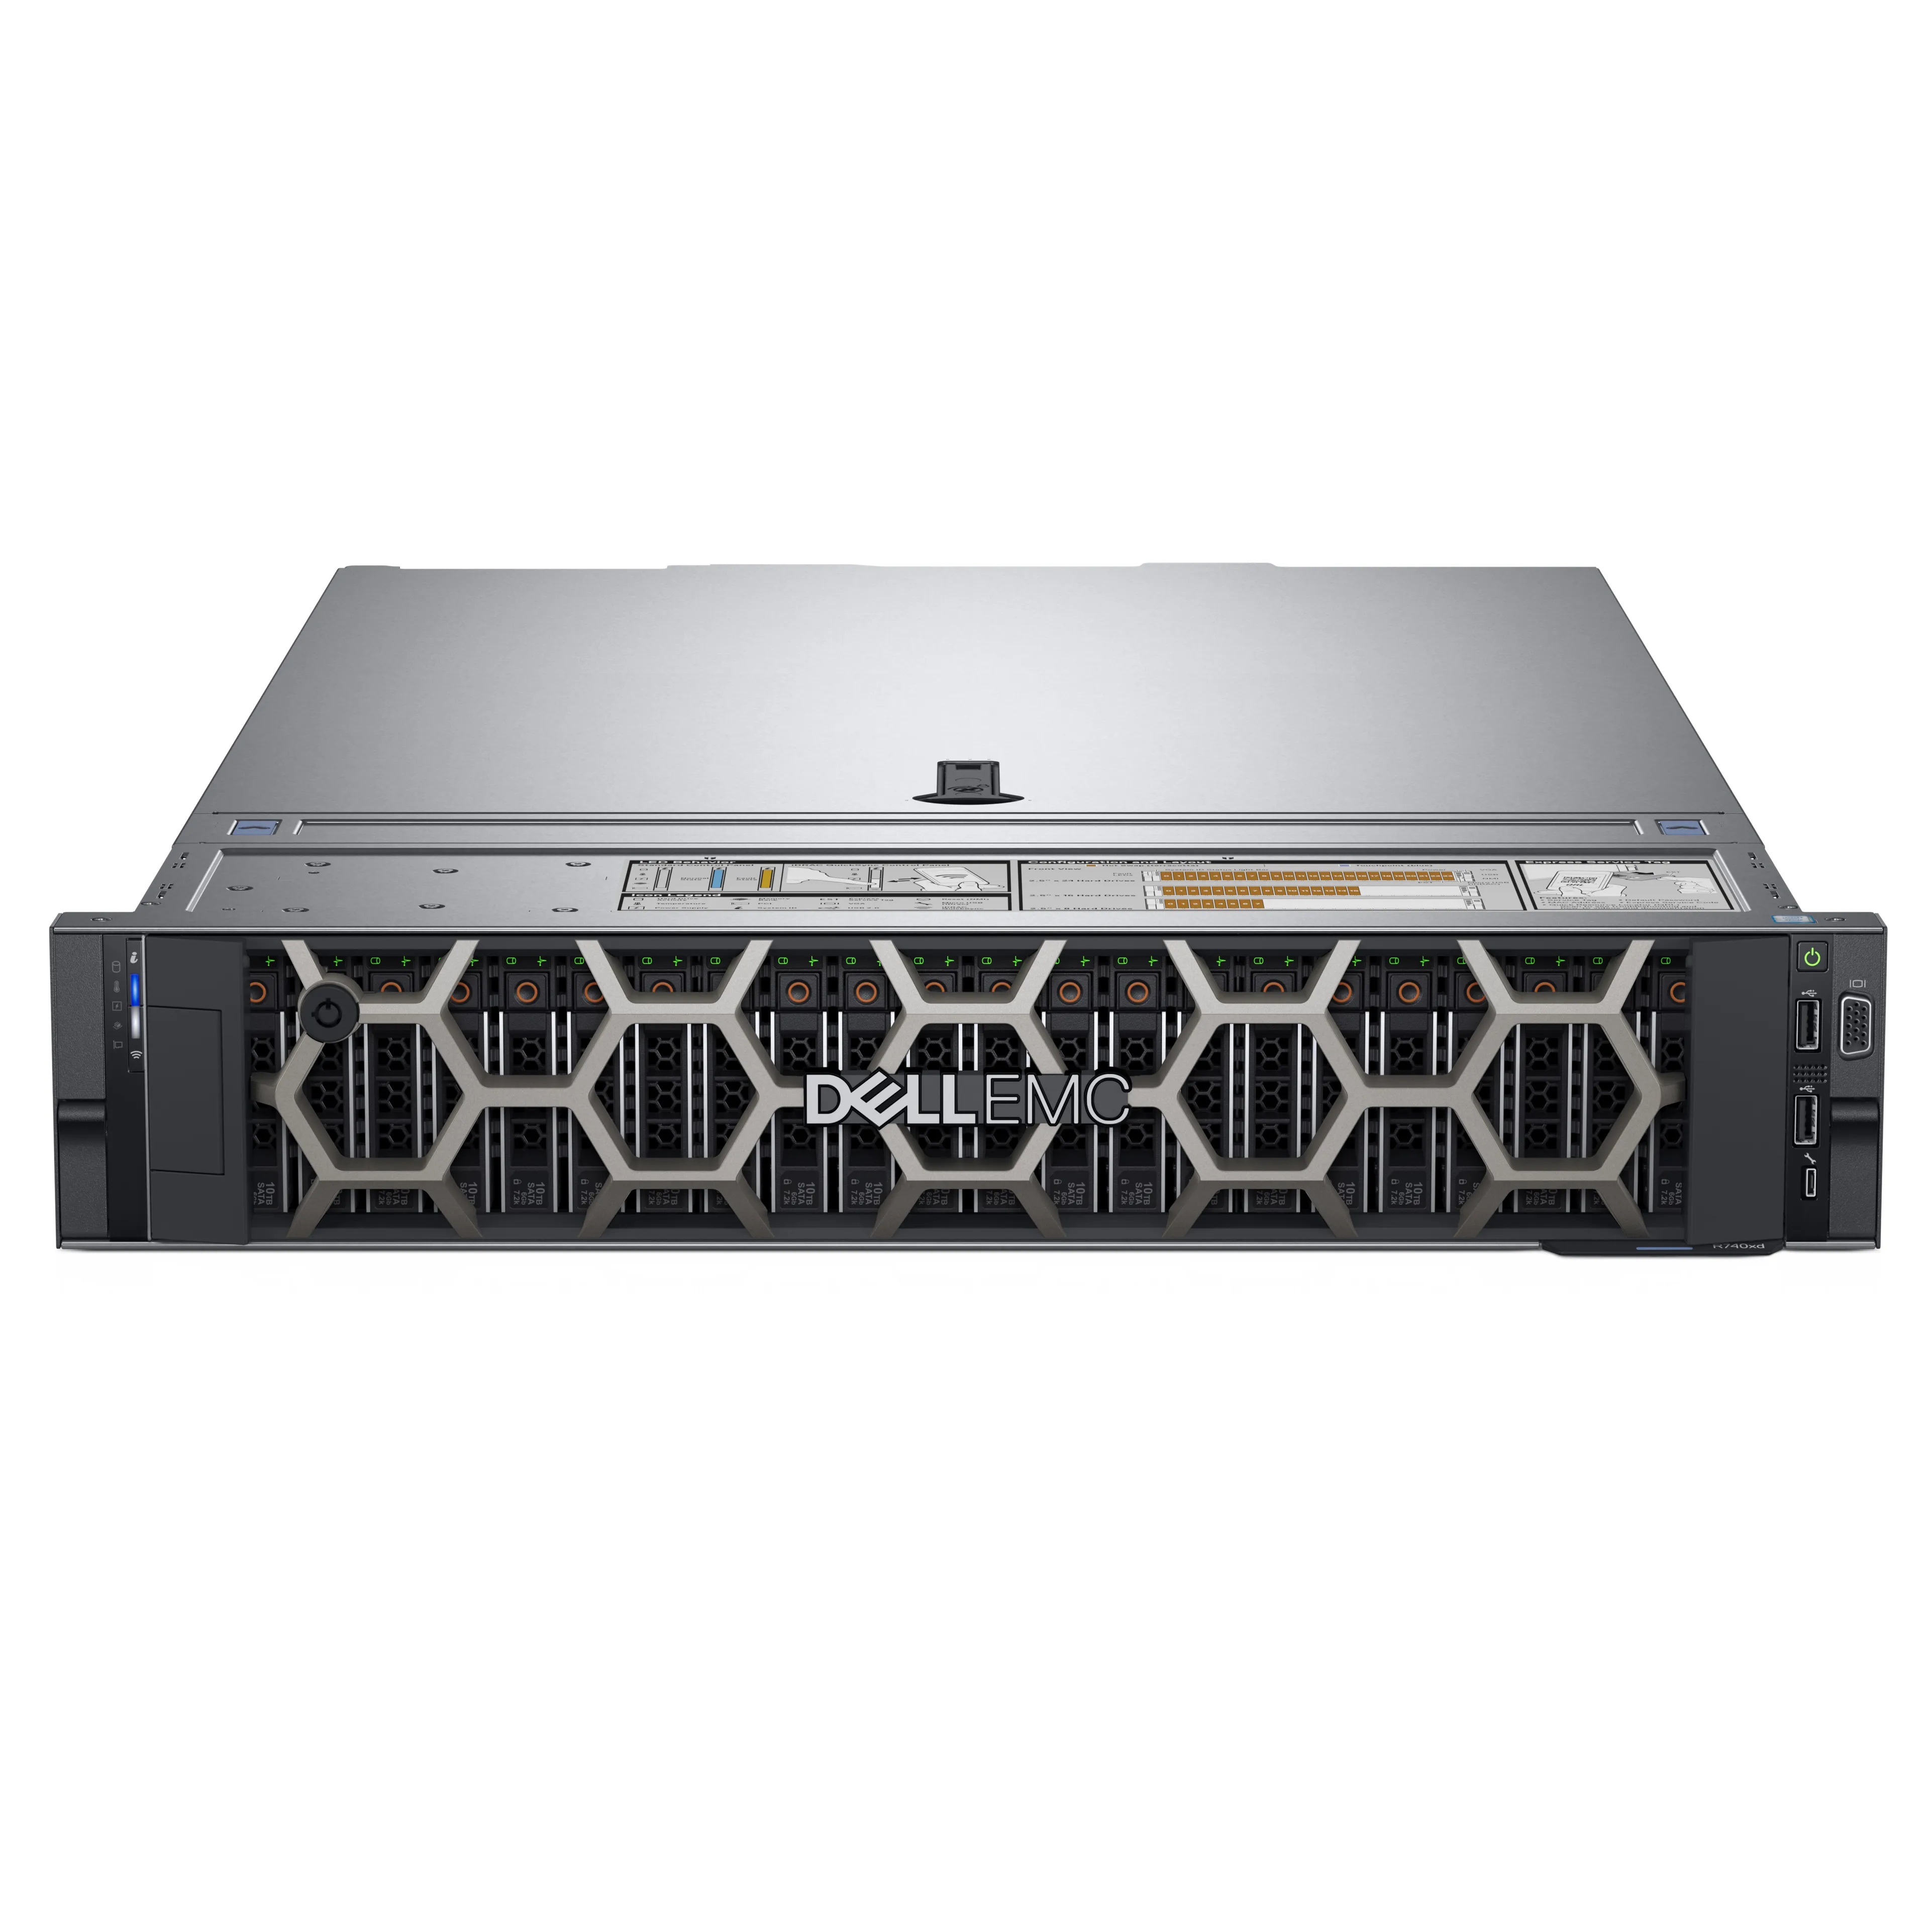 Server Tingkat Perusahaan DELL PowerEdge R740 Intel Xeon 4214R 64GB Memori Poweredge R740